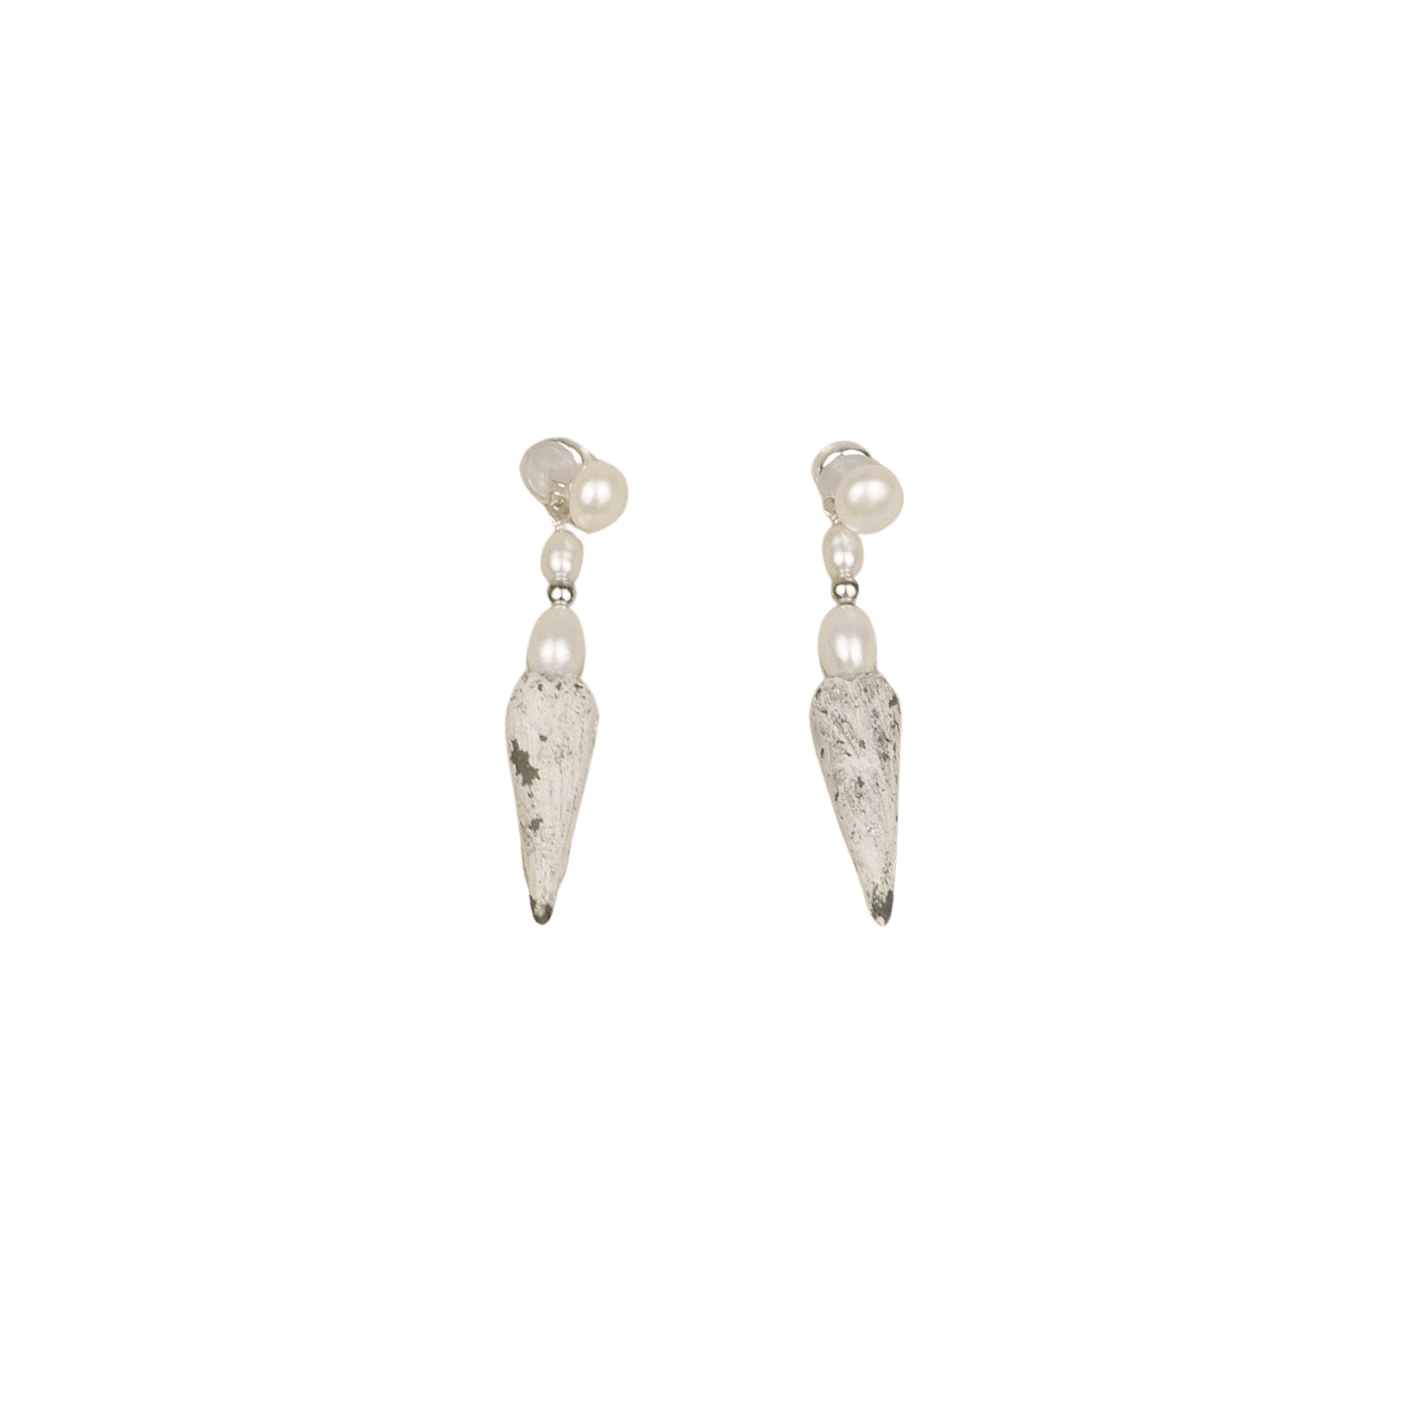 Hanying Silver Glazed Ceramic Heart Earrings